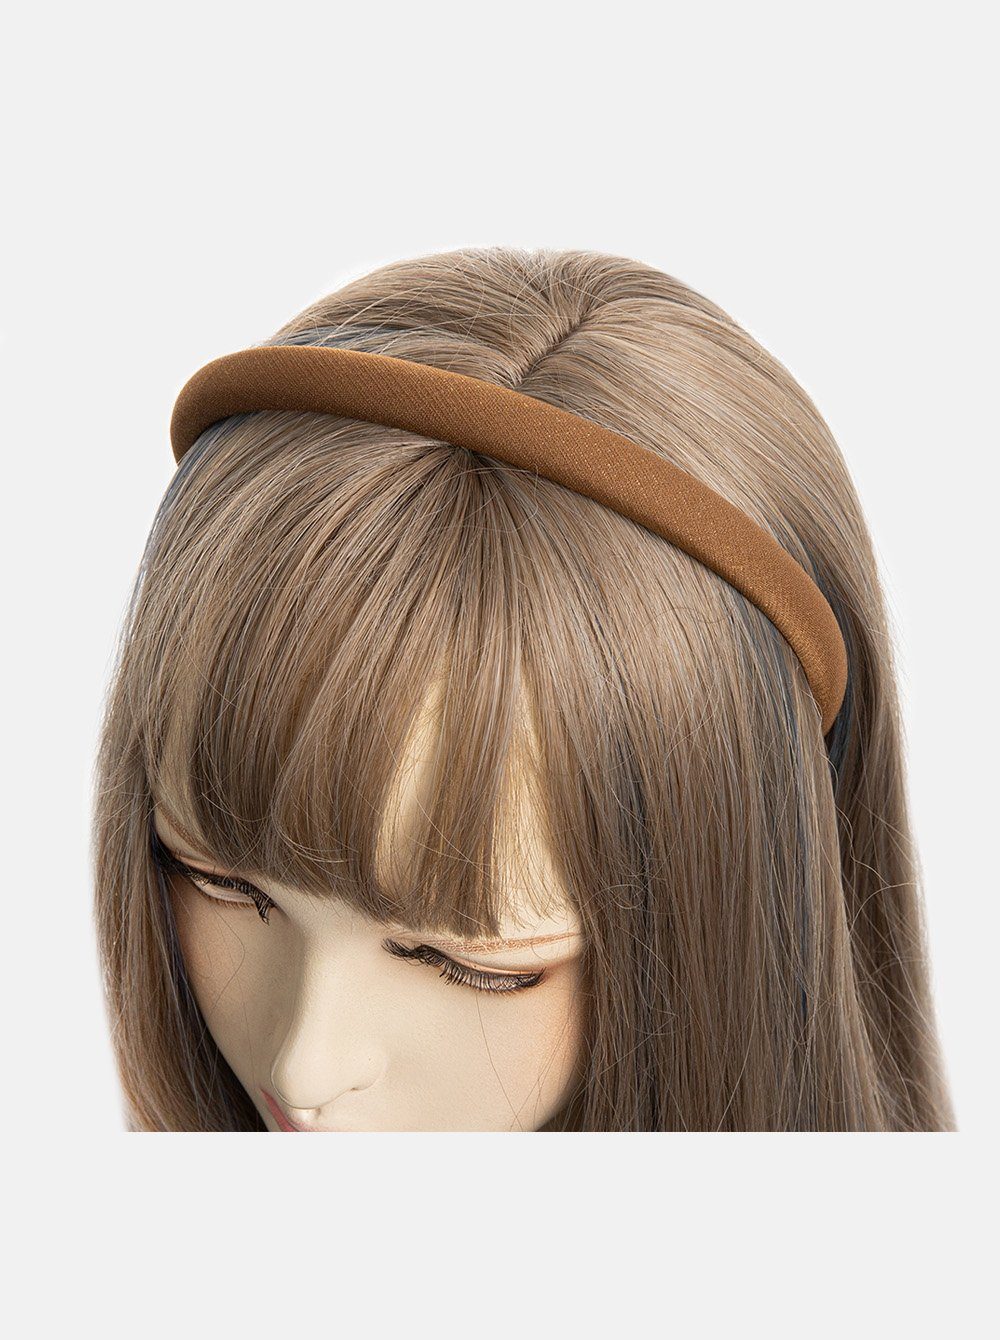 axy Haarreif Haarreif aus Stoff mit feinen Metallicfäden, gepolstertes Wunderschön Stirnband Haarschmuck Braun